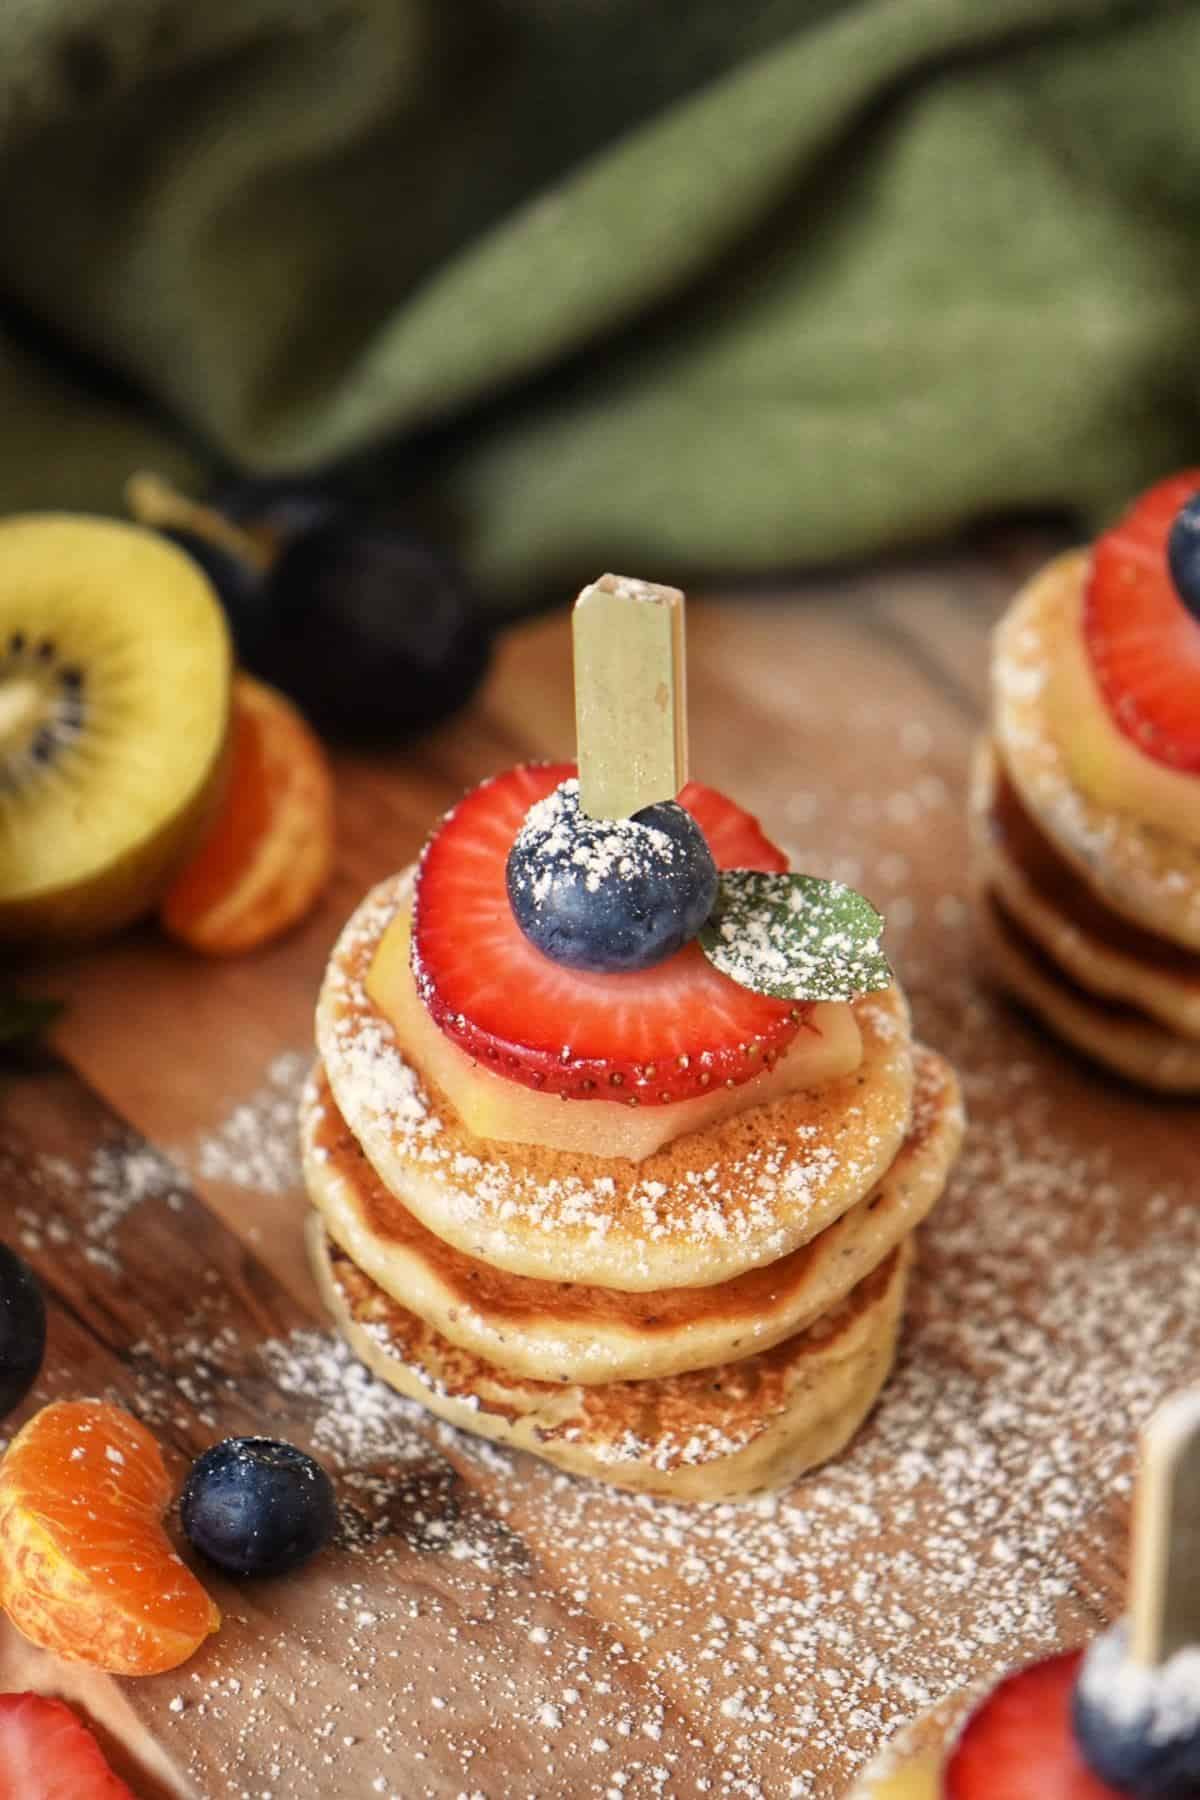 What's more delicious than pancakes?! 🤔 MINI PANCAKES